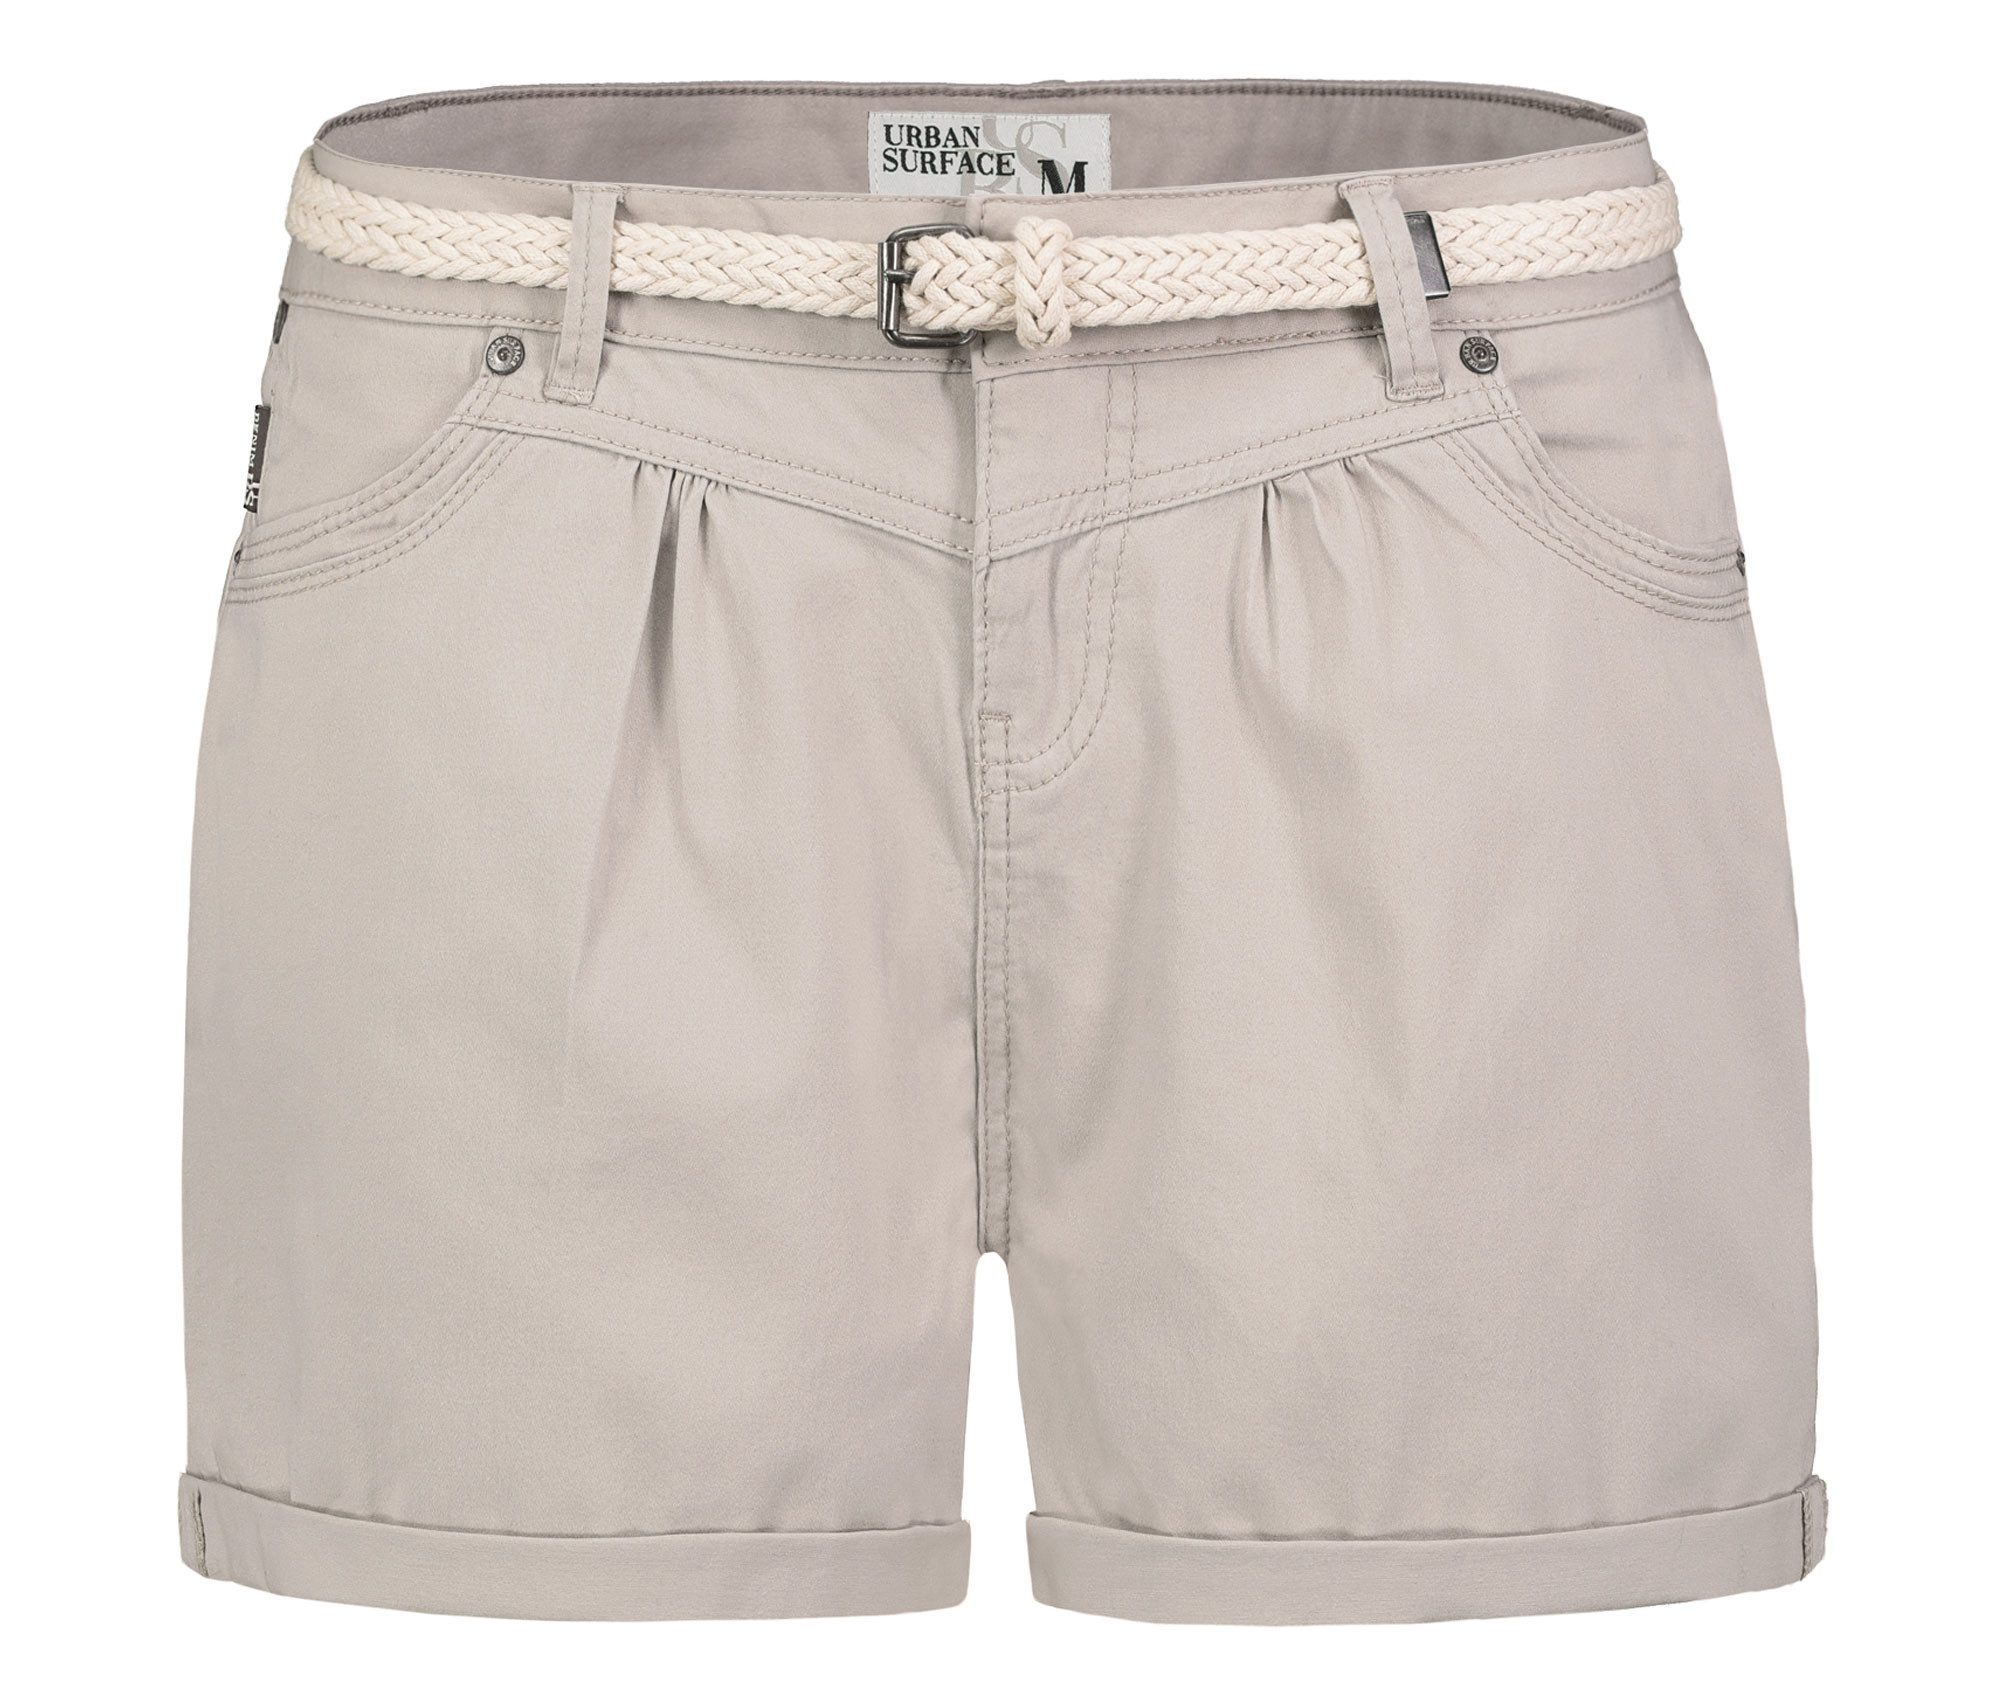 SUBLEVEL Shorts Damen Bermudas kurze Hose Baumwolle Hotpants Chino Sommer Hose elastisch, flex, bequem, mit Flechtgürtel